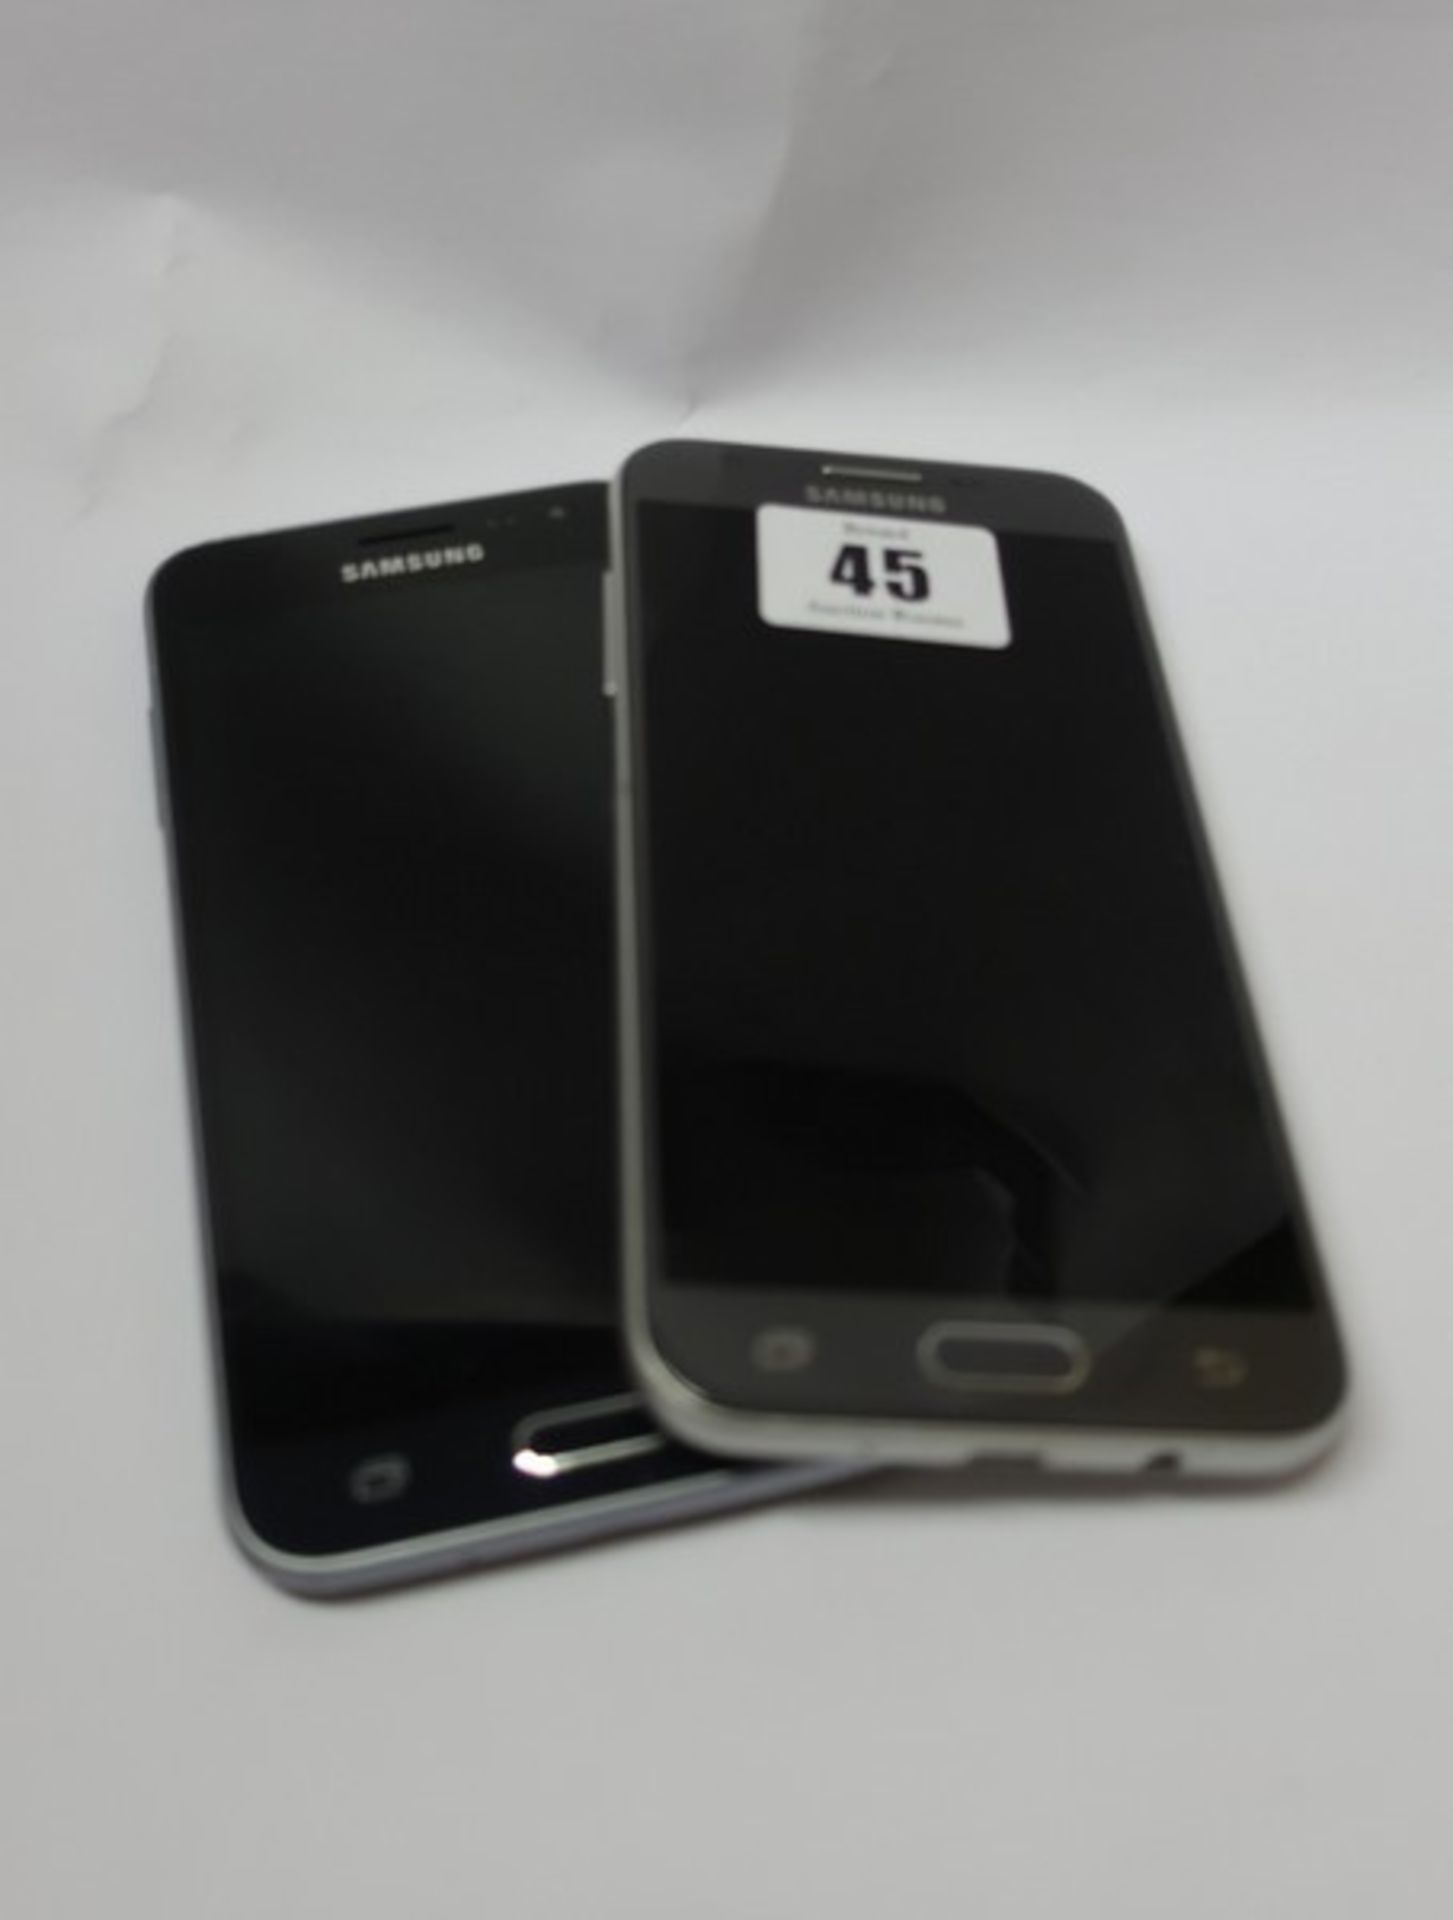 A Samsung Galaxy J3 Emerge SM-J327P 16GB (IMEI: 359102086042232) and a Samsung Galaxy J3 2016 SM-